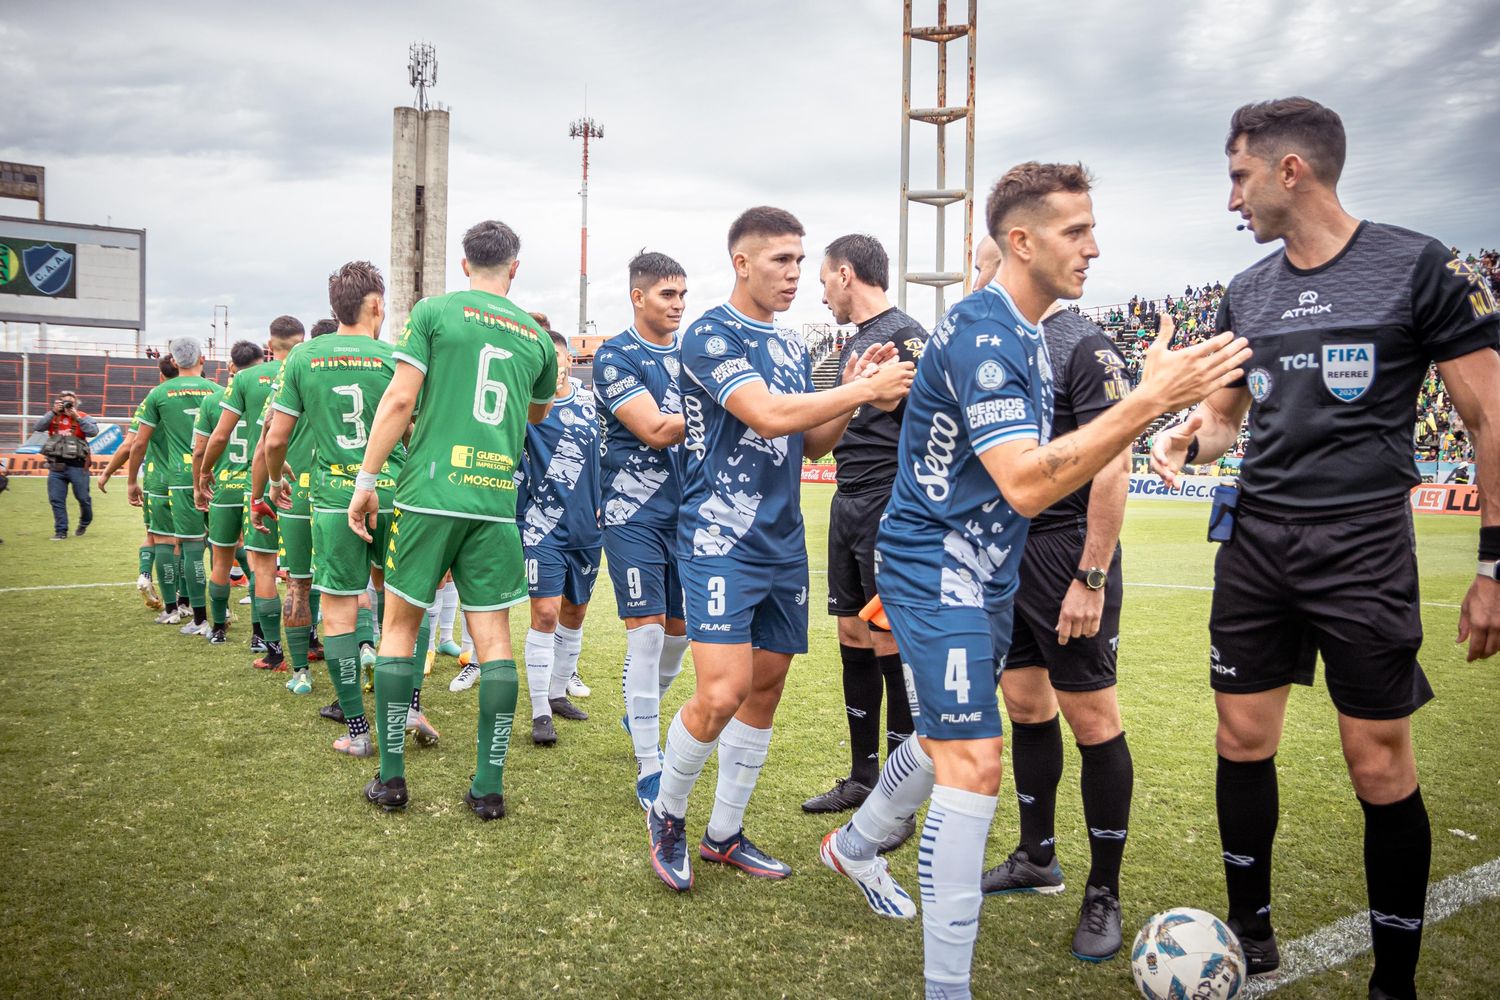 El saludo entre los jugadores en el inicio del encuentro (Fotos: Florencia Arroyos - MarcaDeportiva)